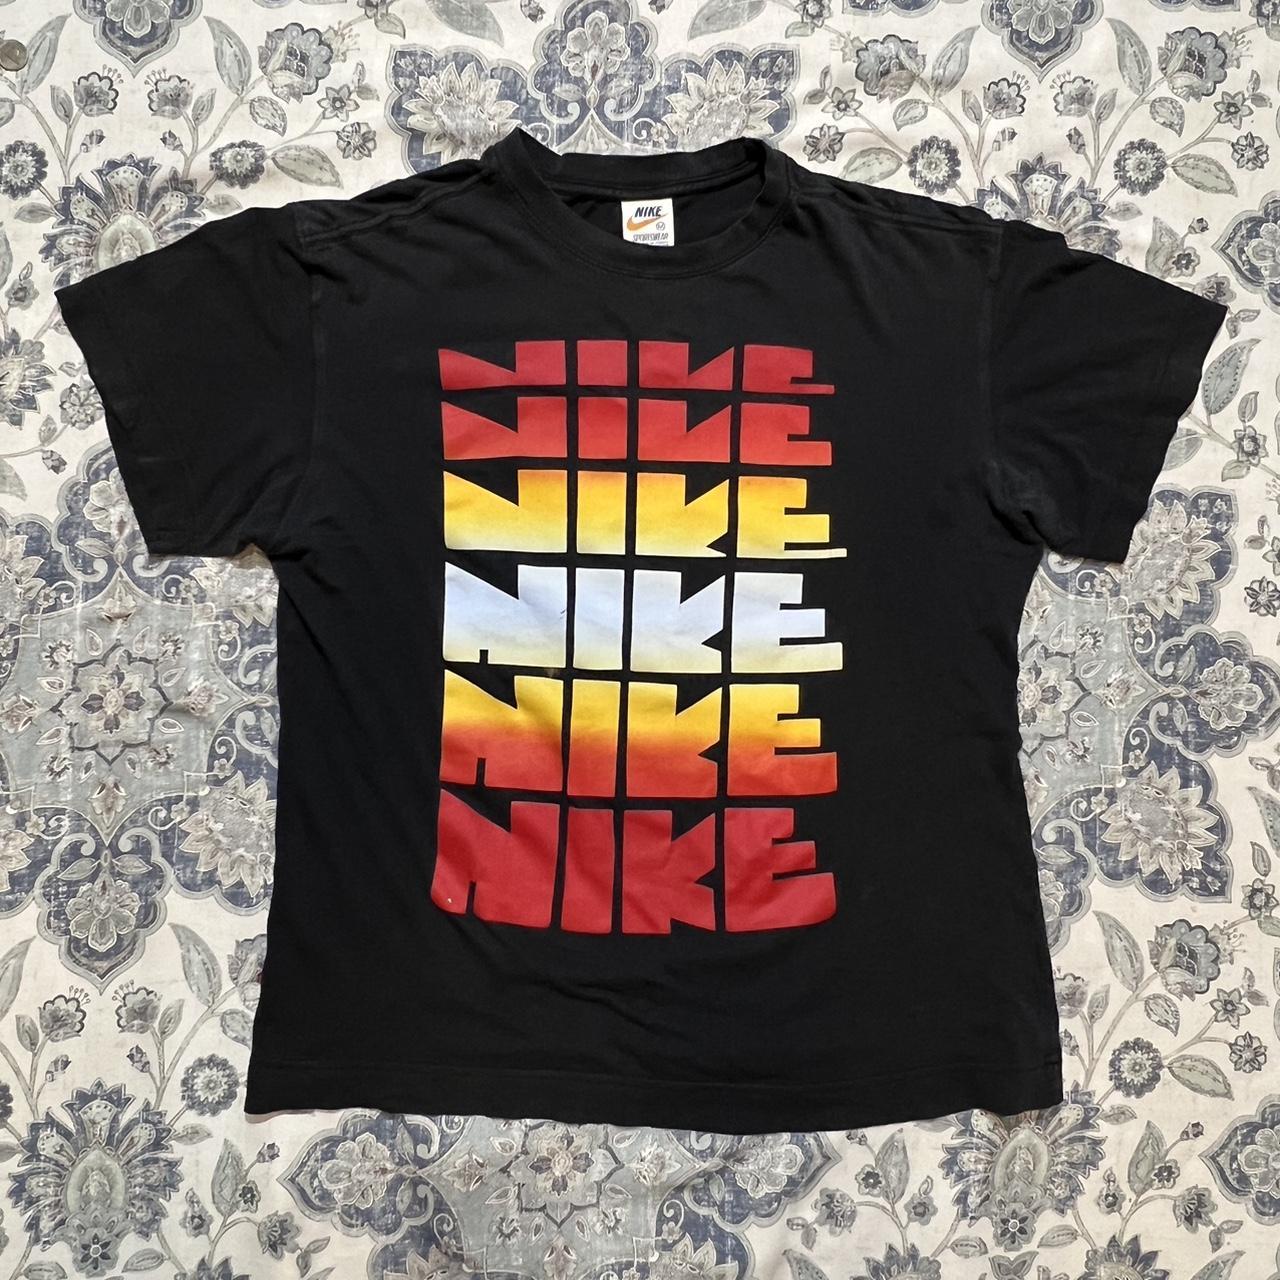 Nike Men's Sportswear T-Shirt Black/Red